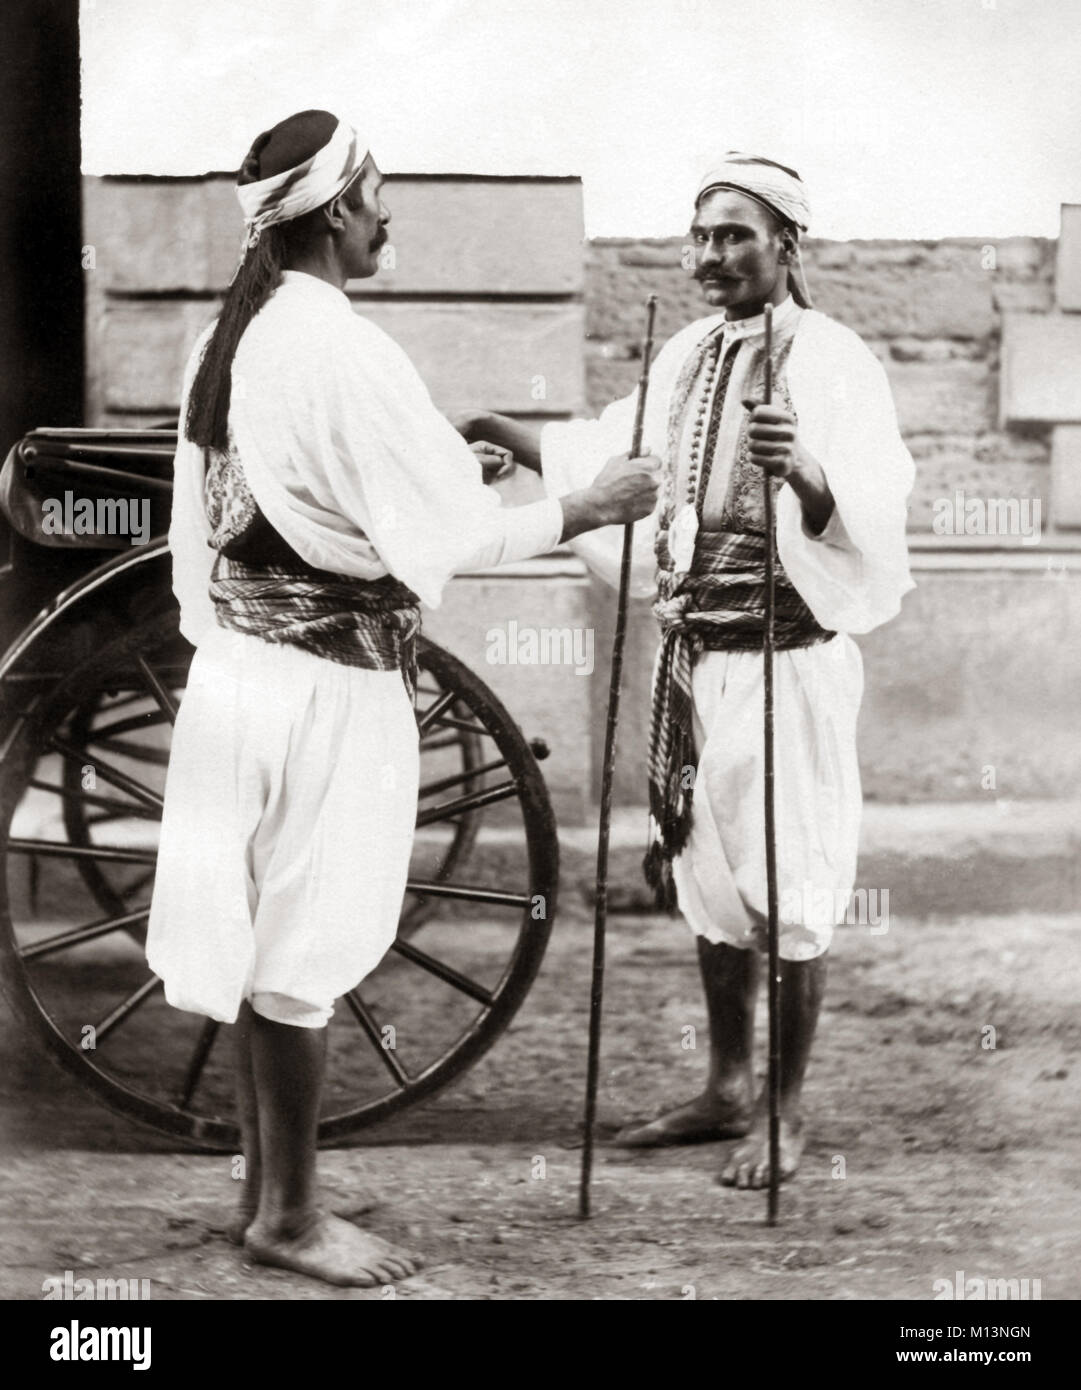 Sais courant, or carriage footmen, Egypt, c.1880's Stock Photo